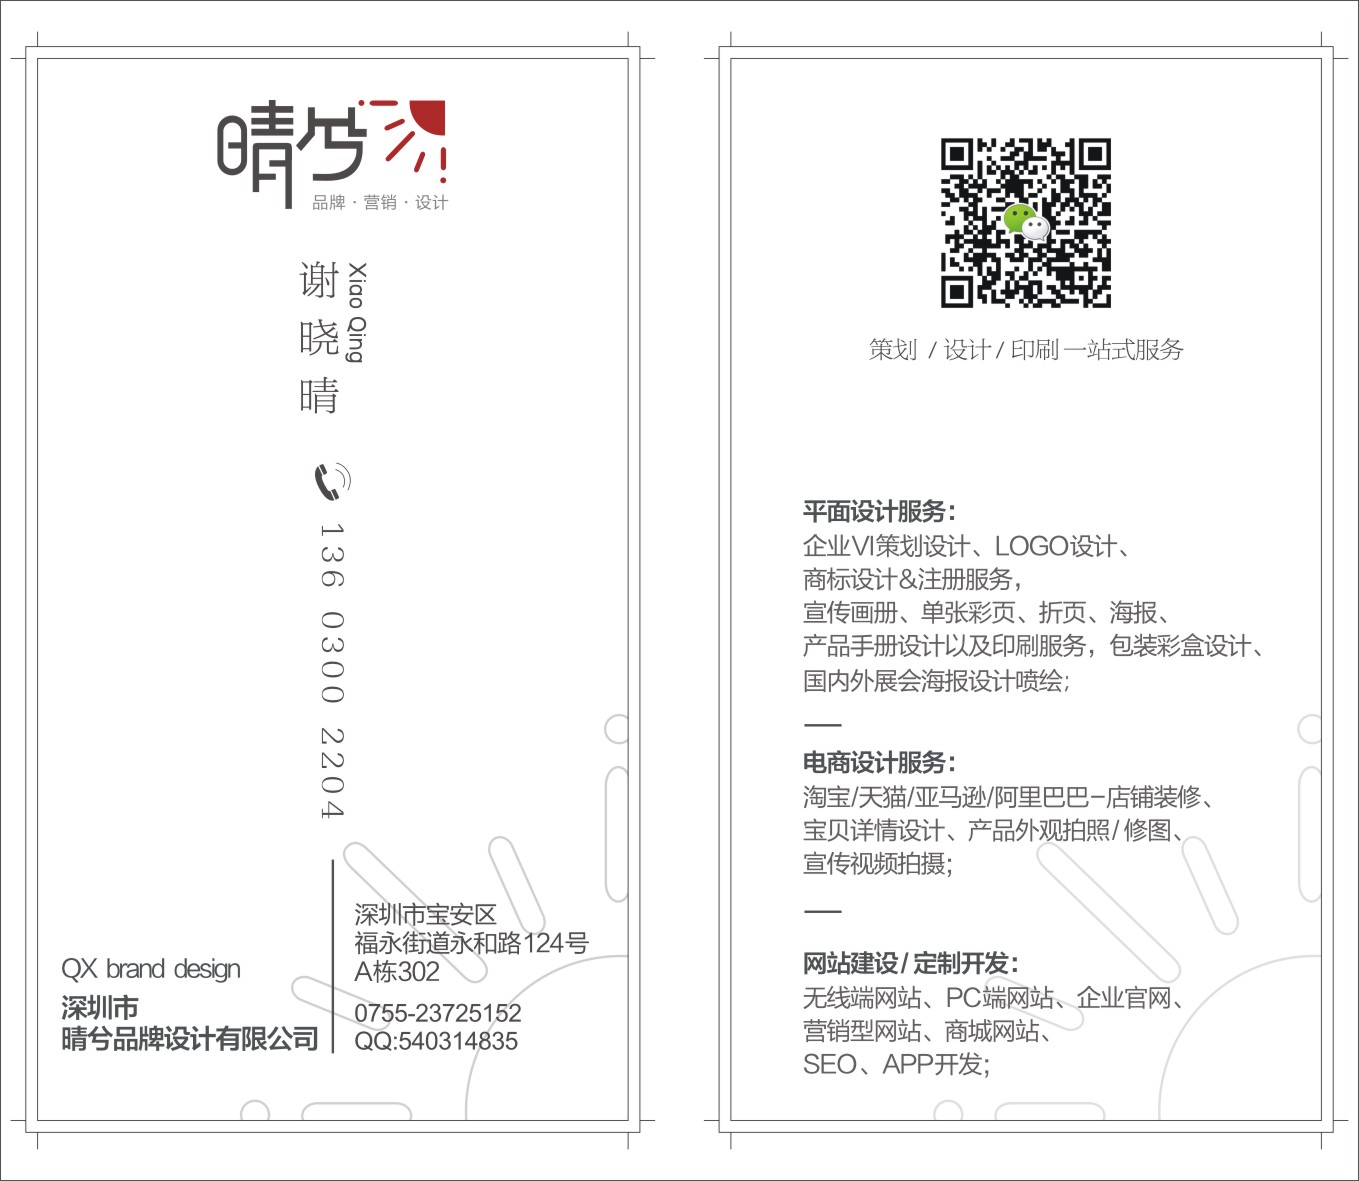 罗湖商标设计 办公文教标志设计 彩页印刷 宣传册印刷设计深圳市